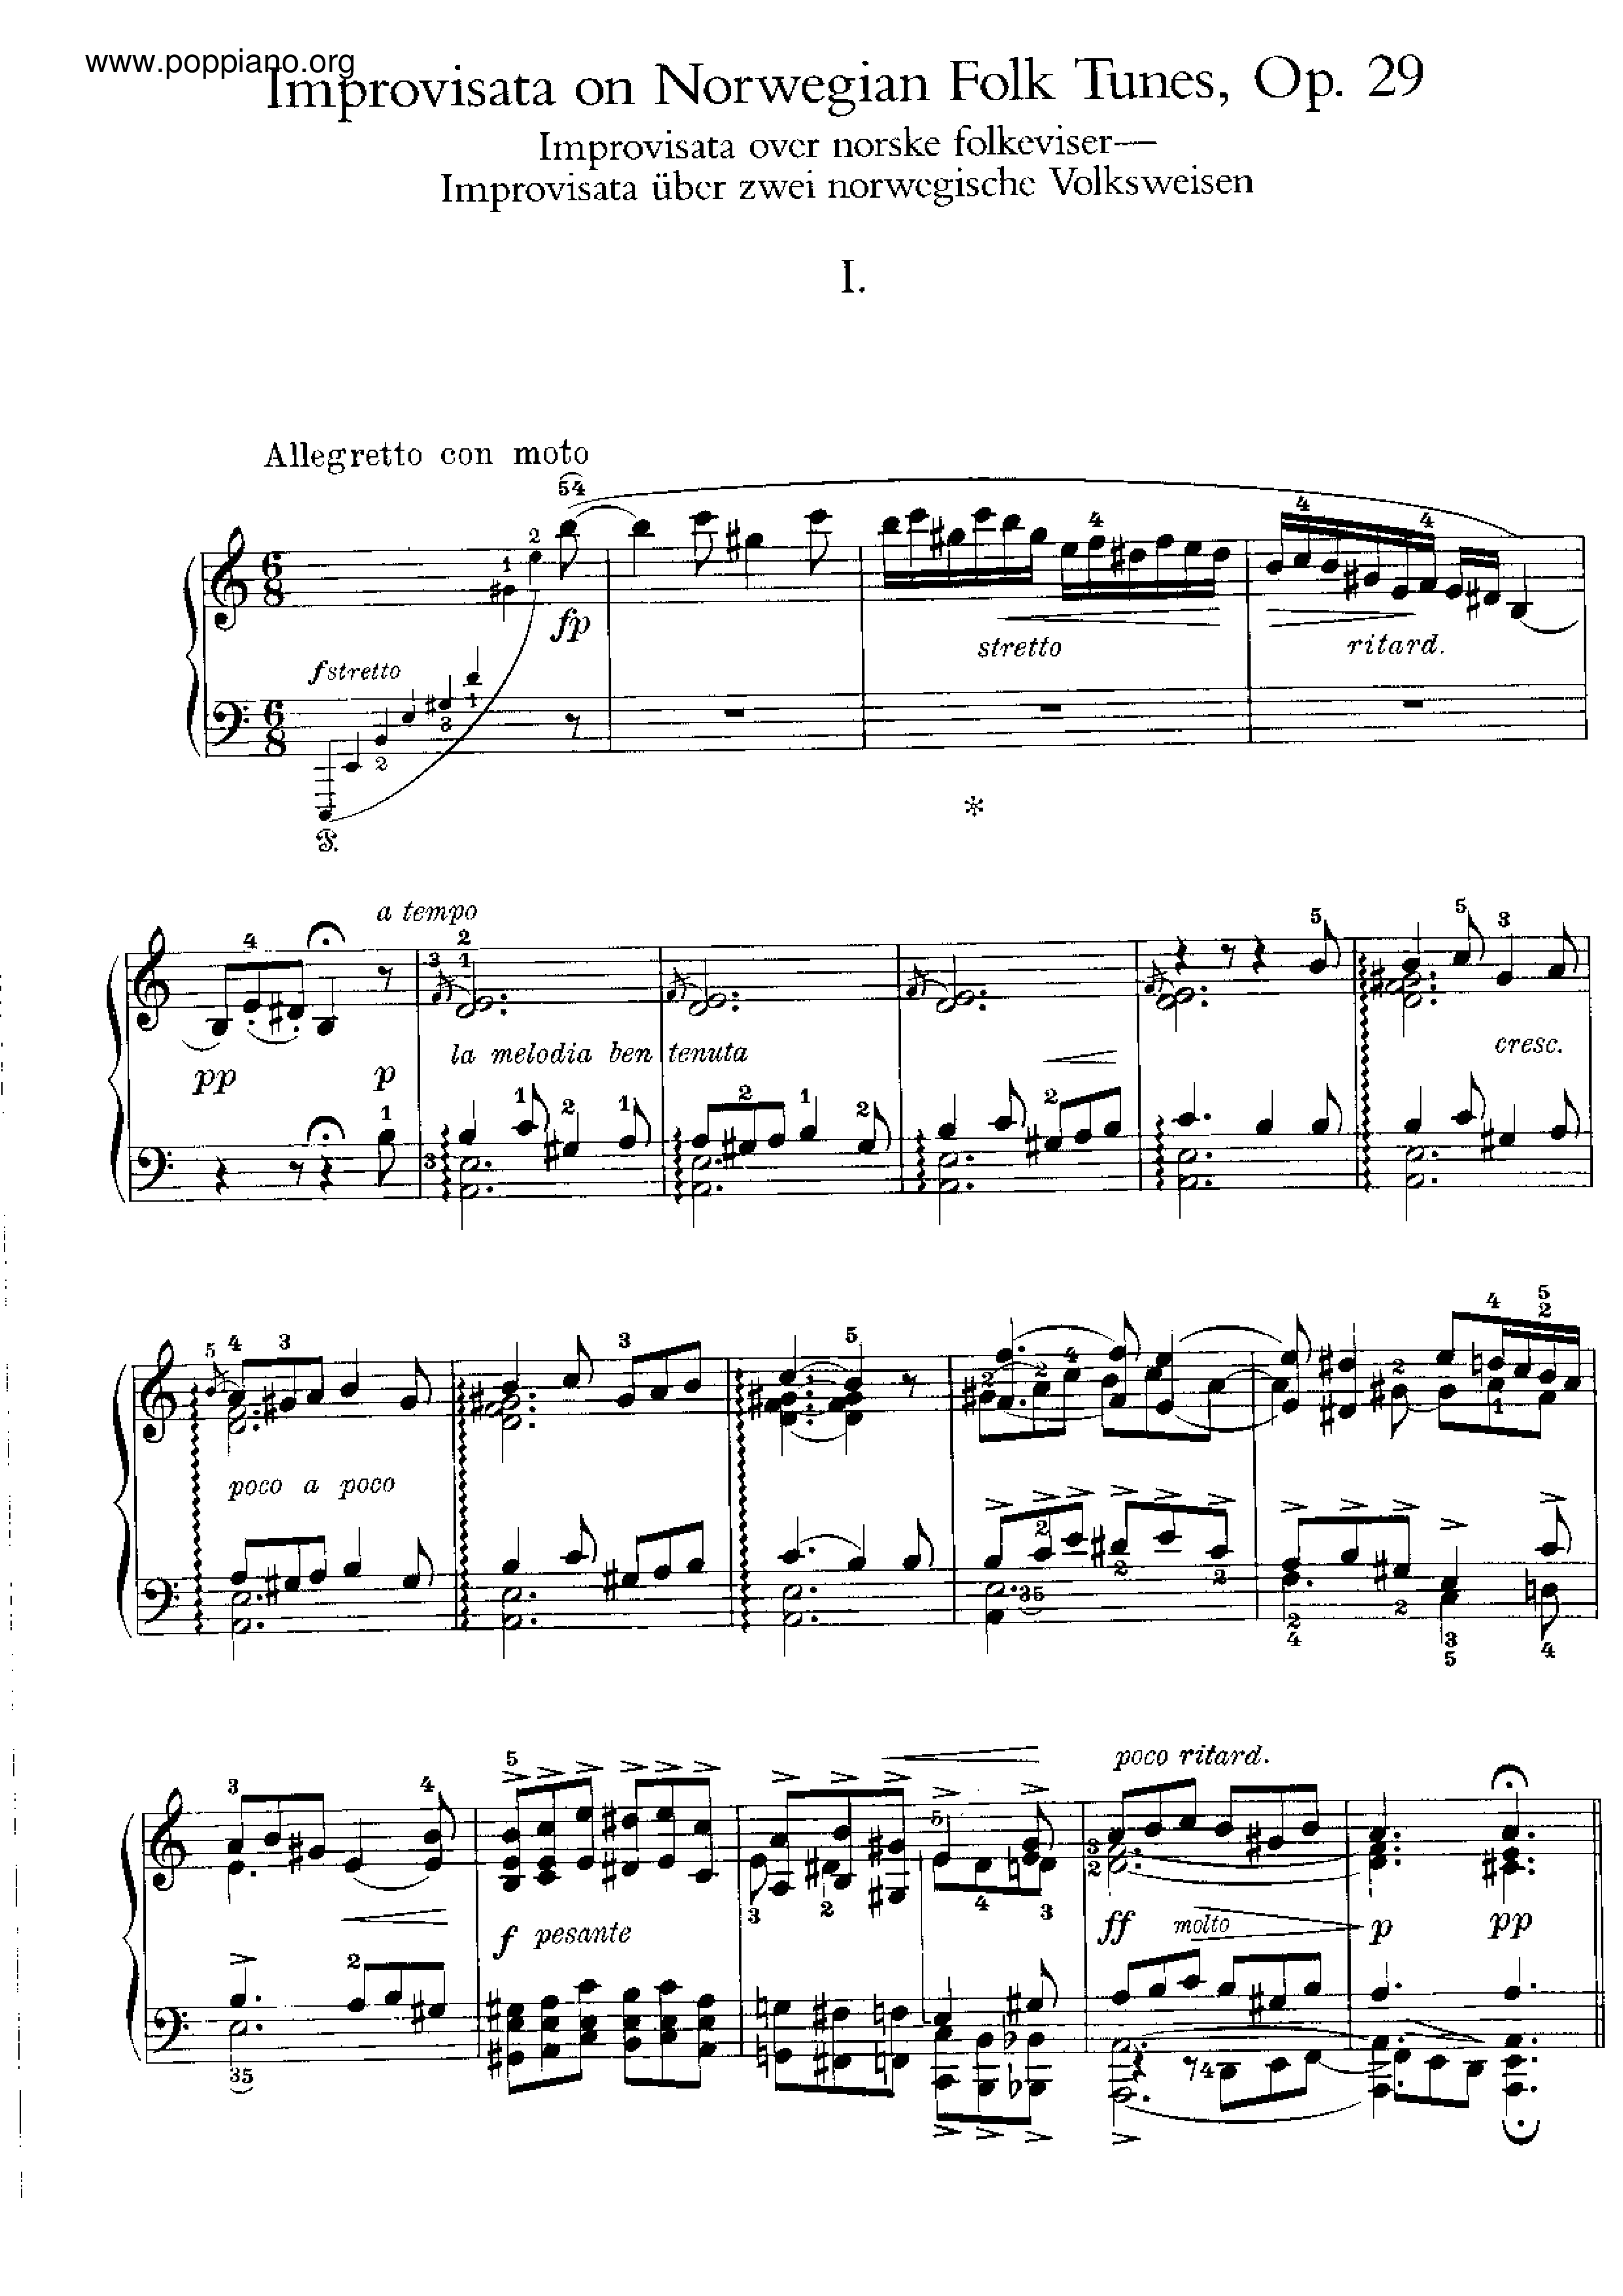 Improvisations on 2 Norwegian Folk Song,s, Op.29琴譜